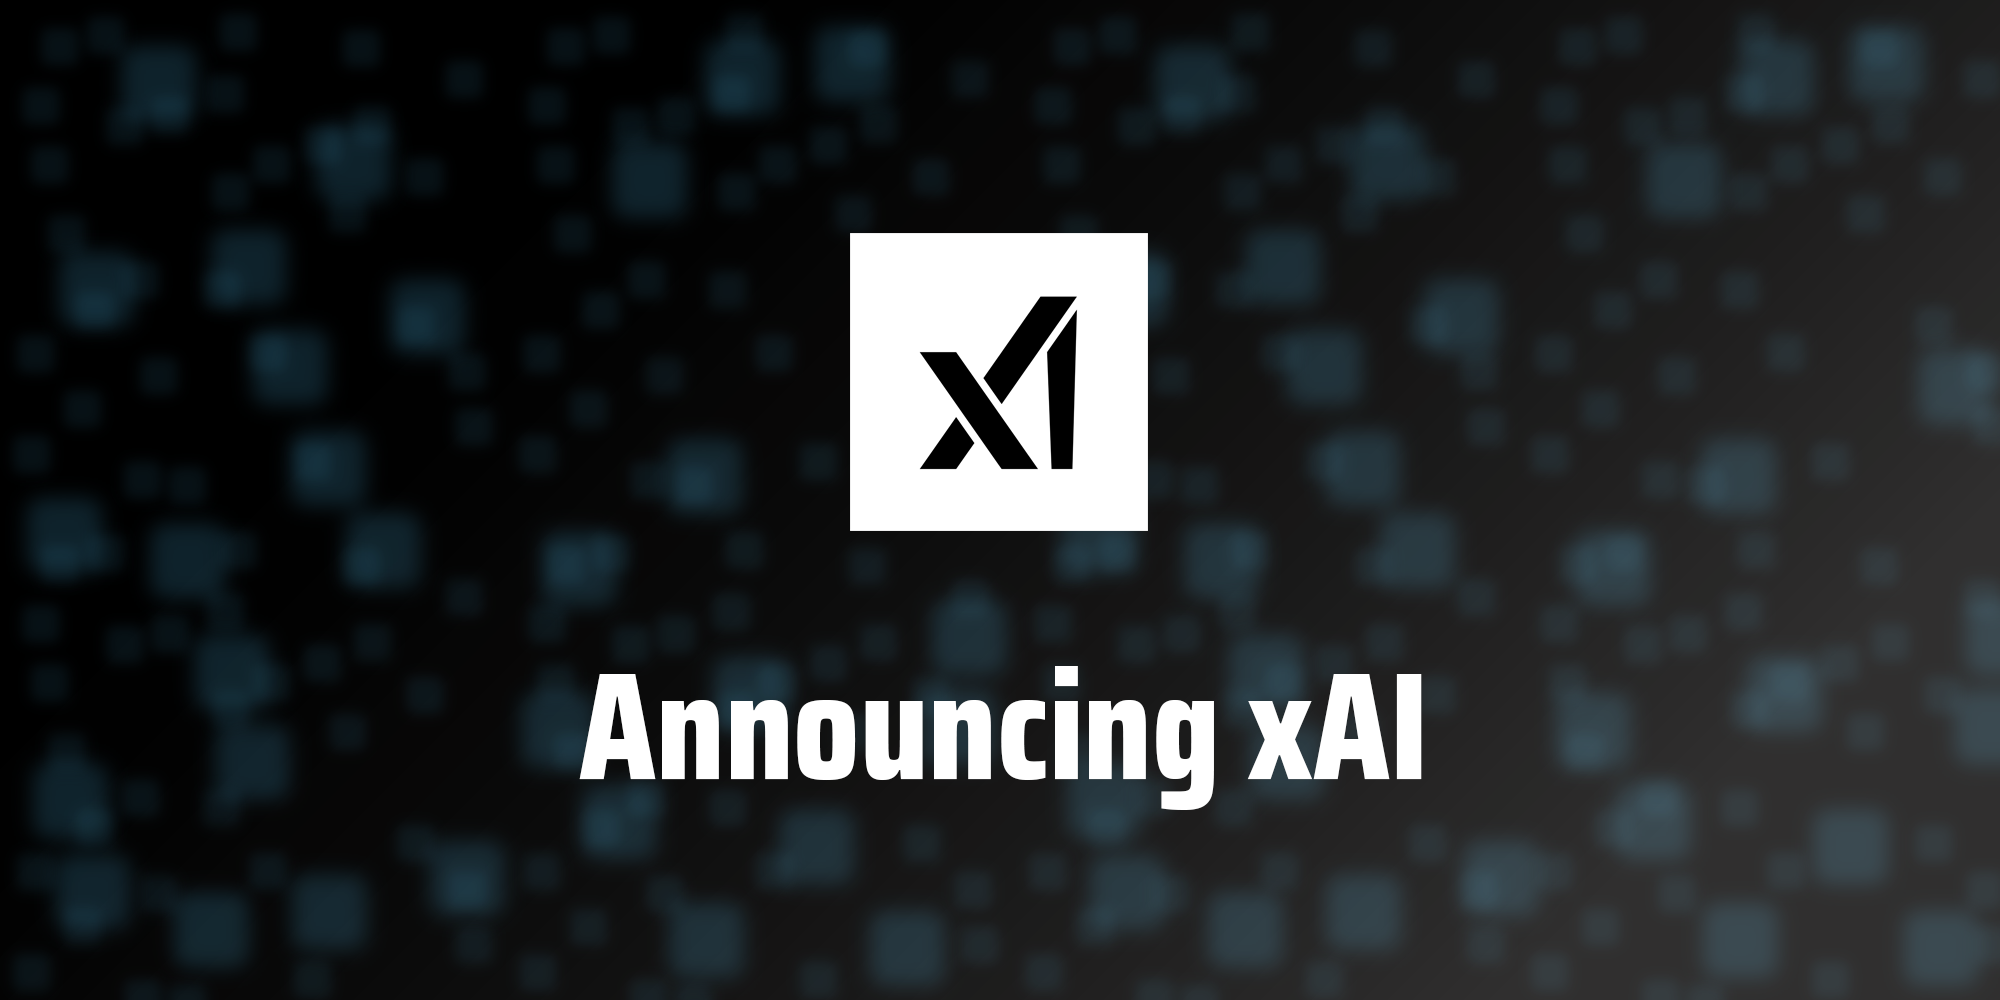 xAI lanserer sin første modell for kunstig intelligens for en "utvalgt gruppe brukere".